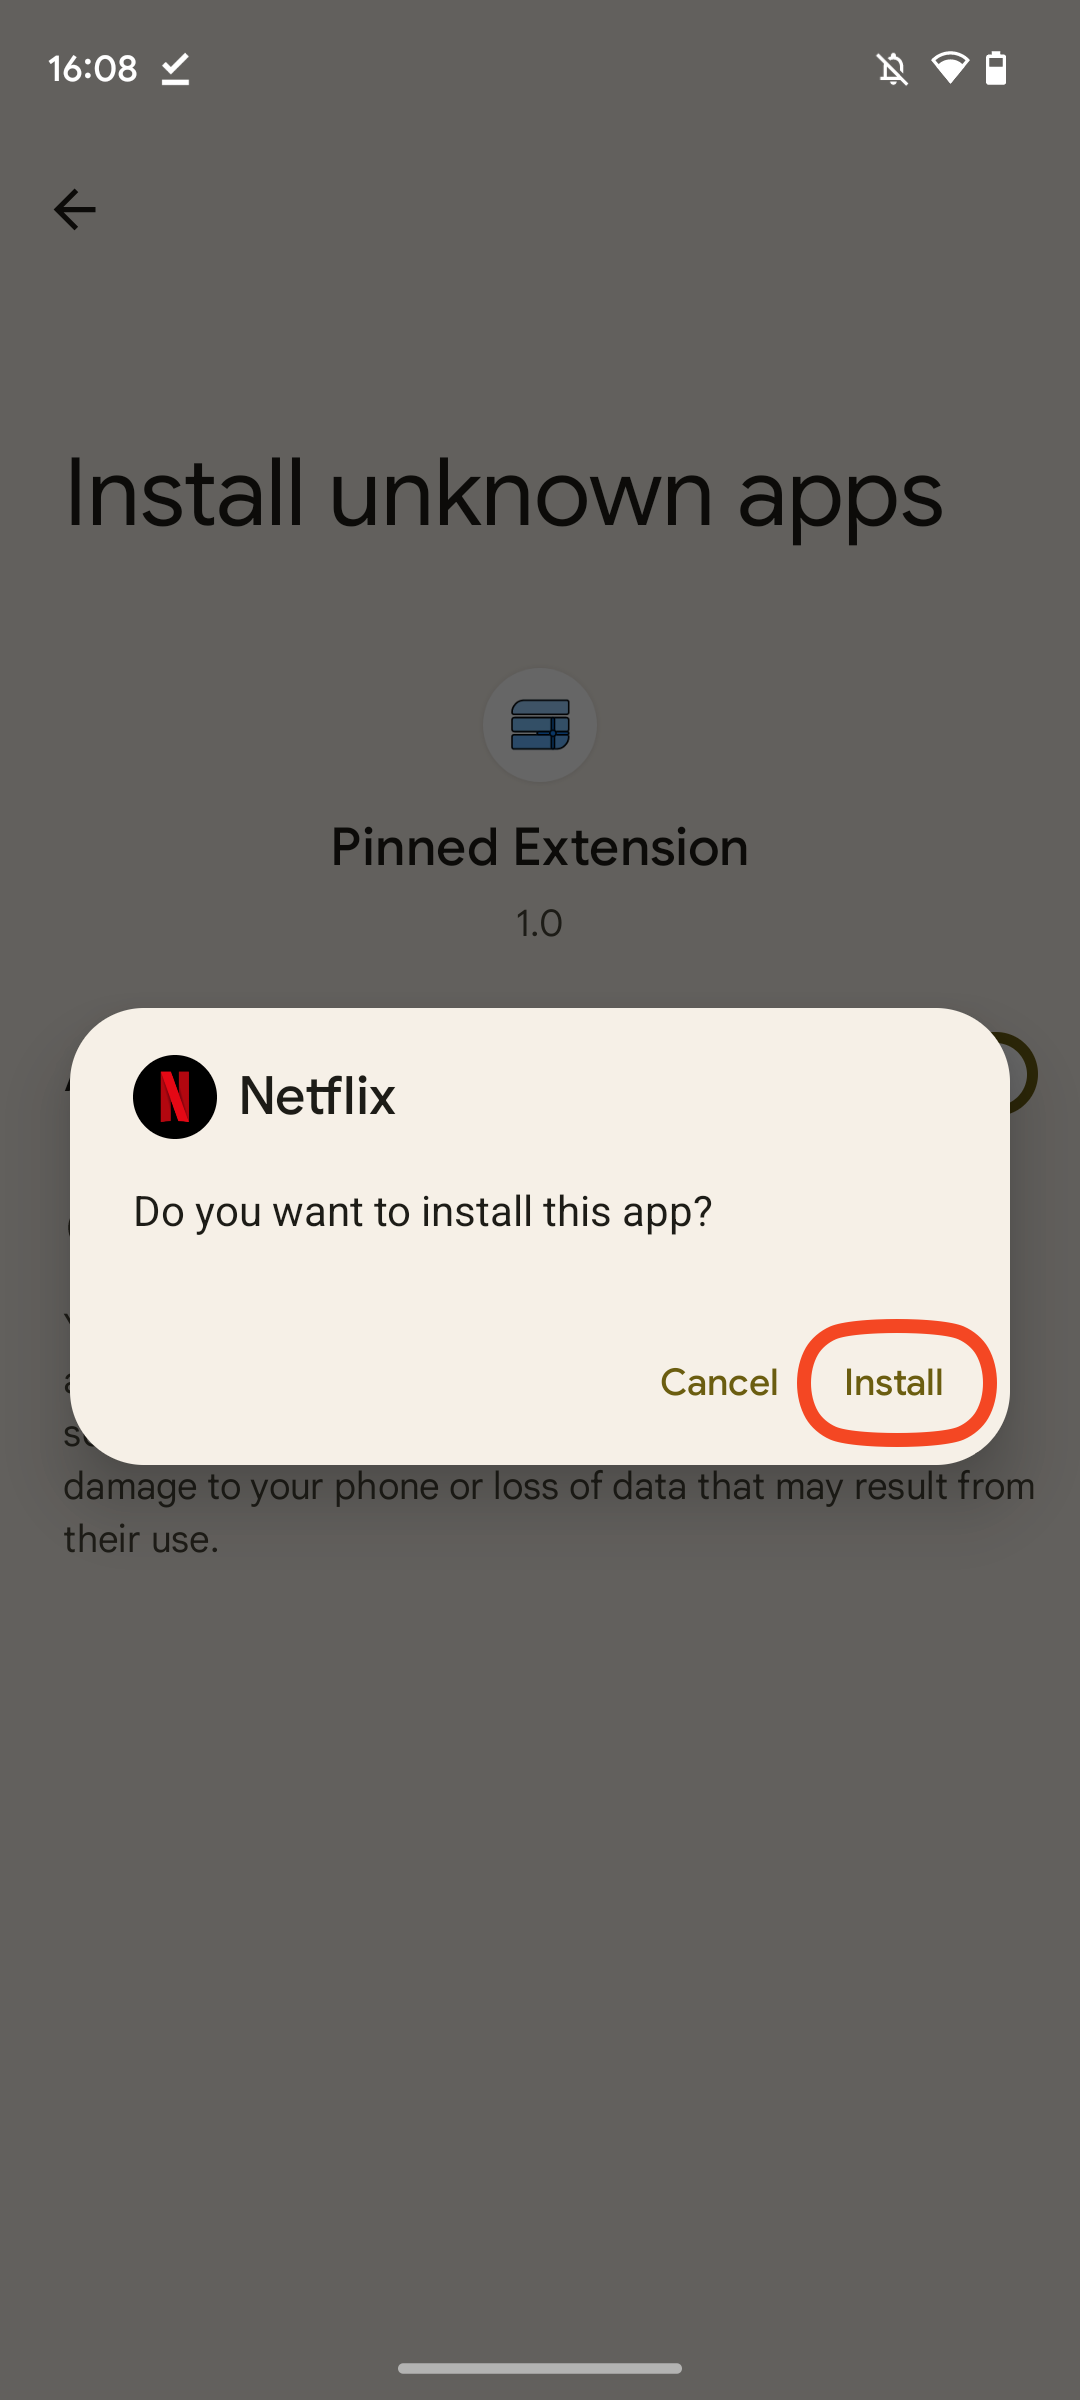 Captura de tela da caixa de diálogo de instalação do Netflix, perguntando se você deseja instalar o aplicativo